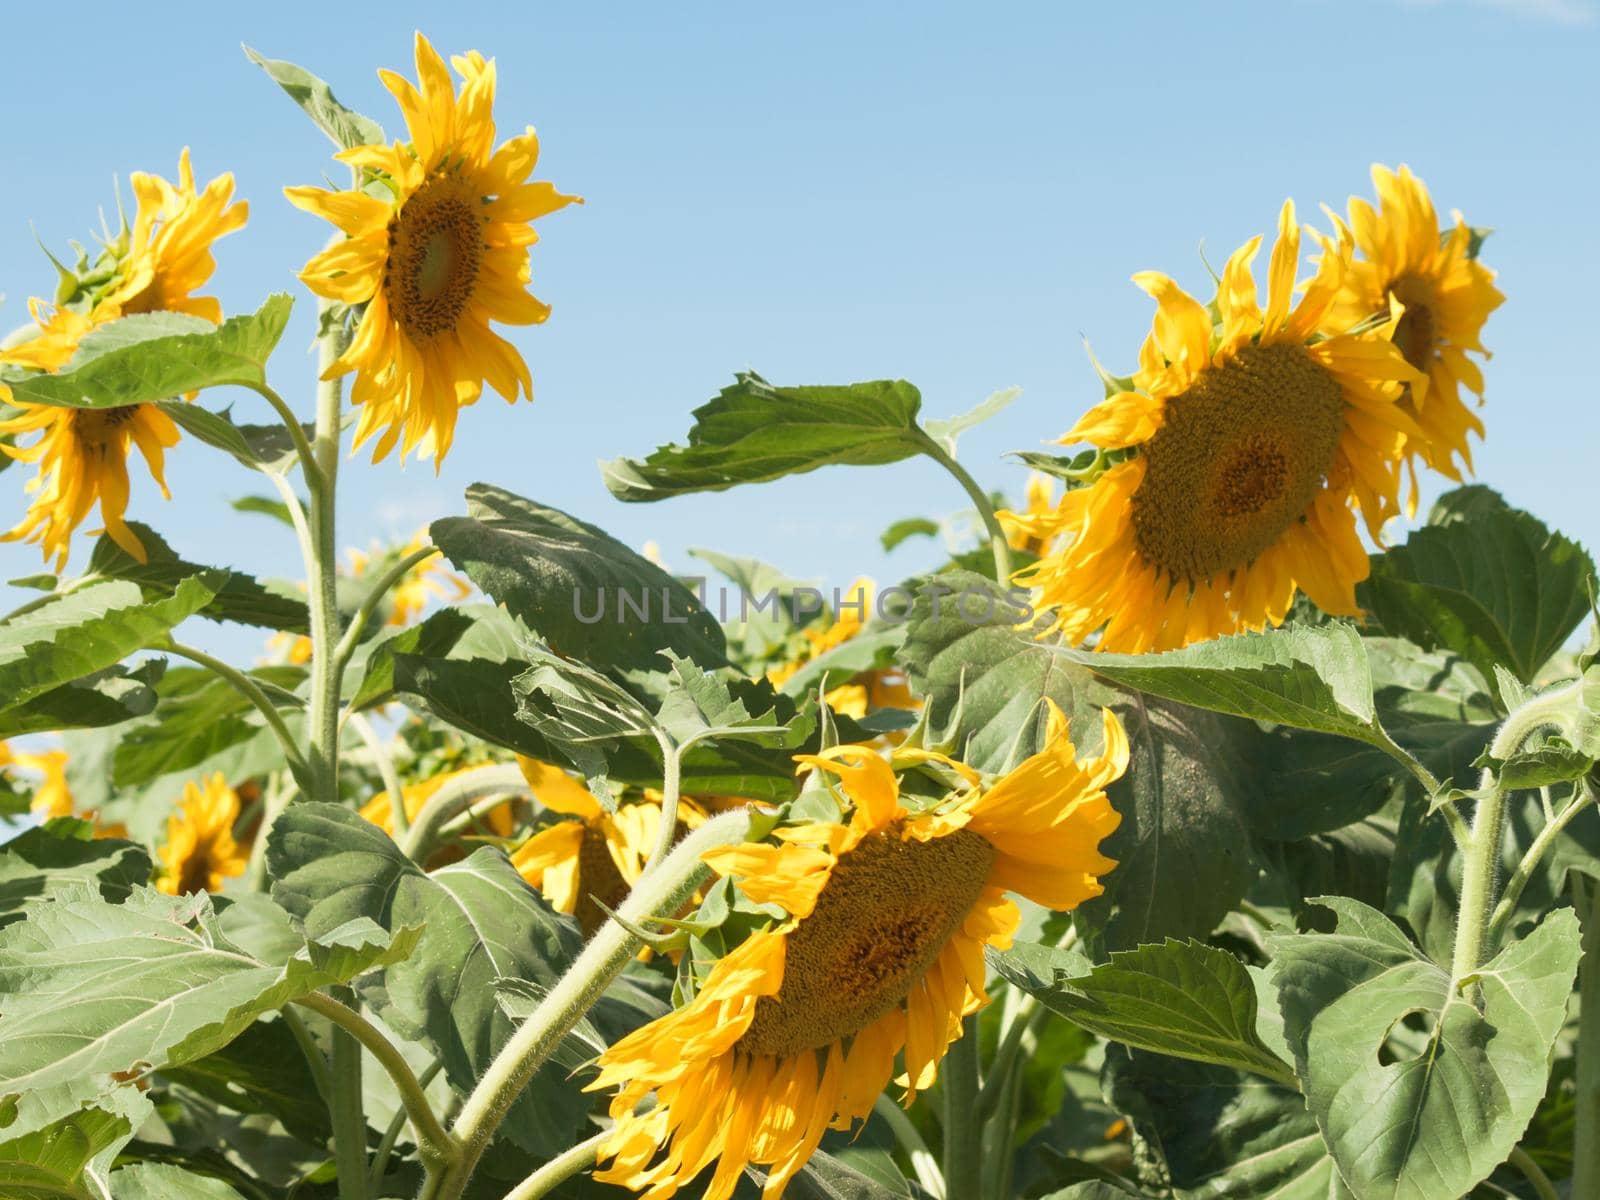 Sunflowers against the blue sky by arinahabich